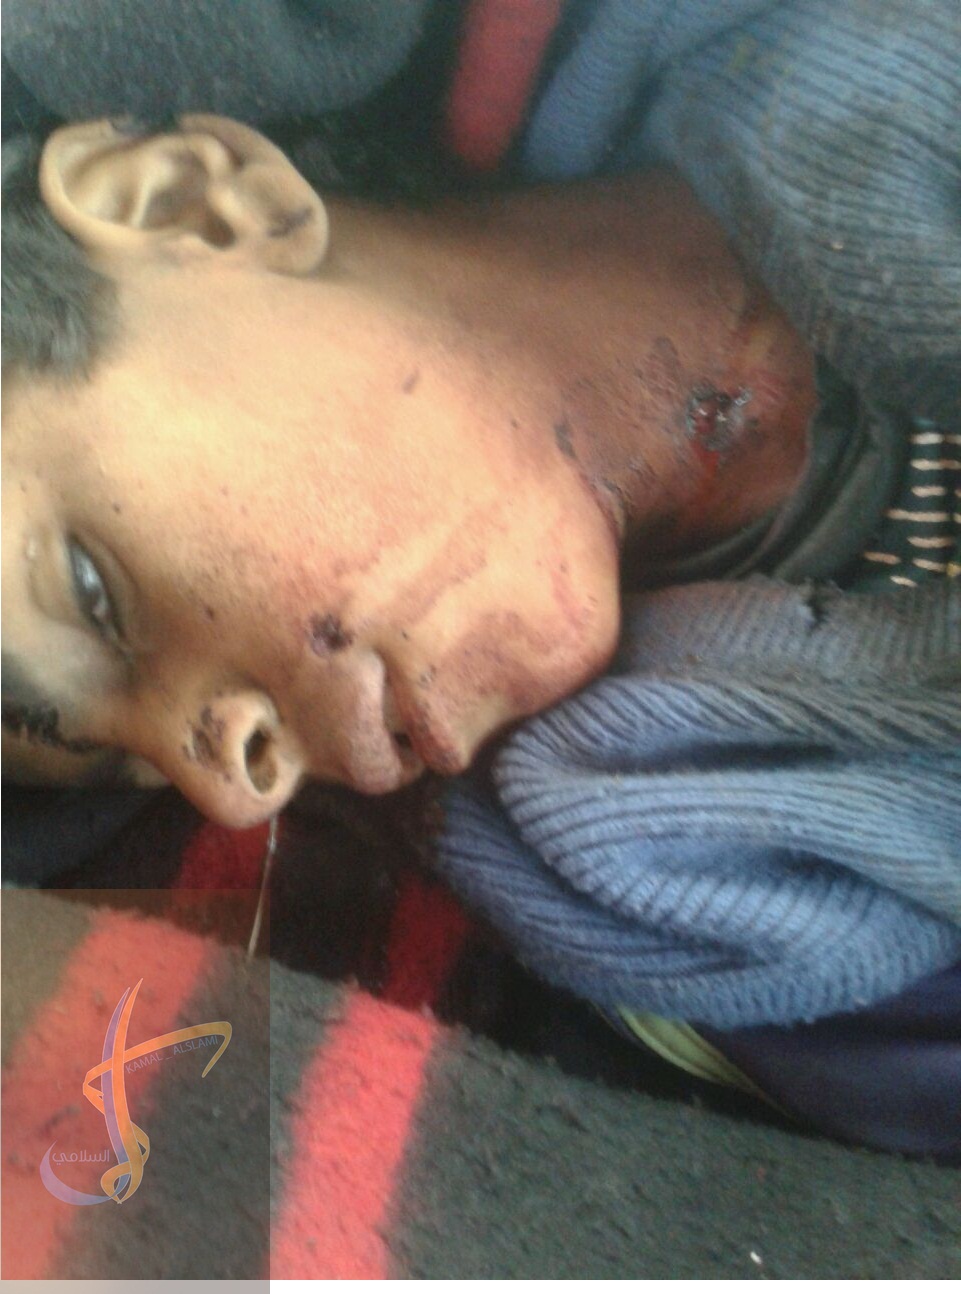  مليشيا الحوثي ترتكب مجزرة بحق الأطفال في قرية الغول بمديرية الزاهر بالبيضاء (أسماء الضحايا)